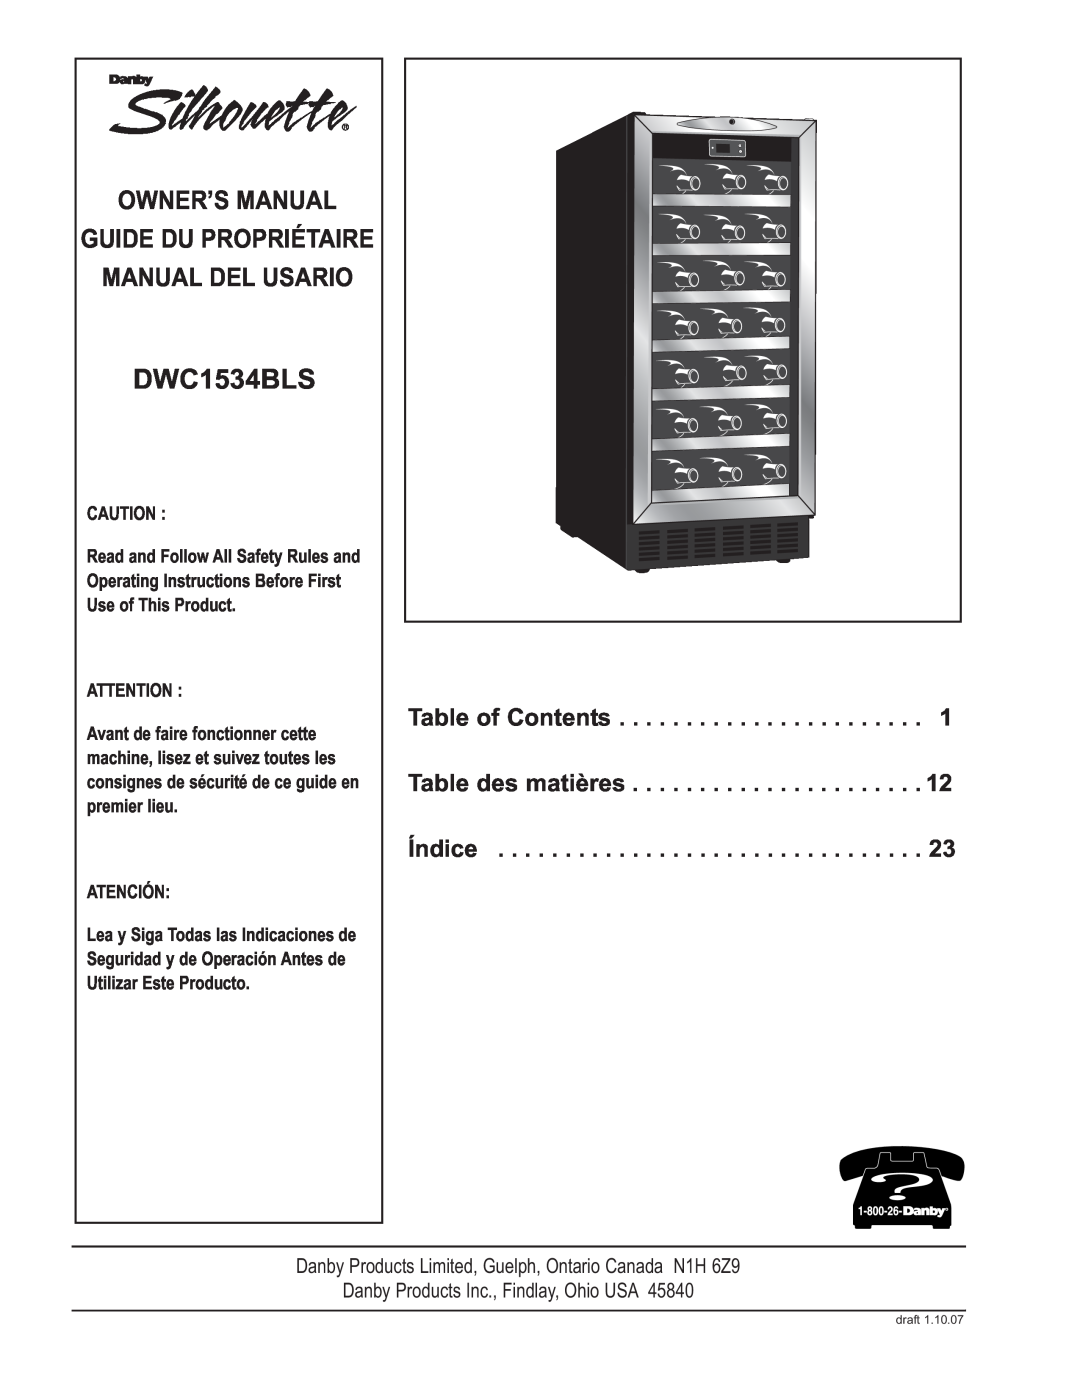 Danby DWC1534BLS owner manual Manual Del Usario, Guide Du Propriétaire, Table of Contents, Table des matières, Índice 